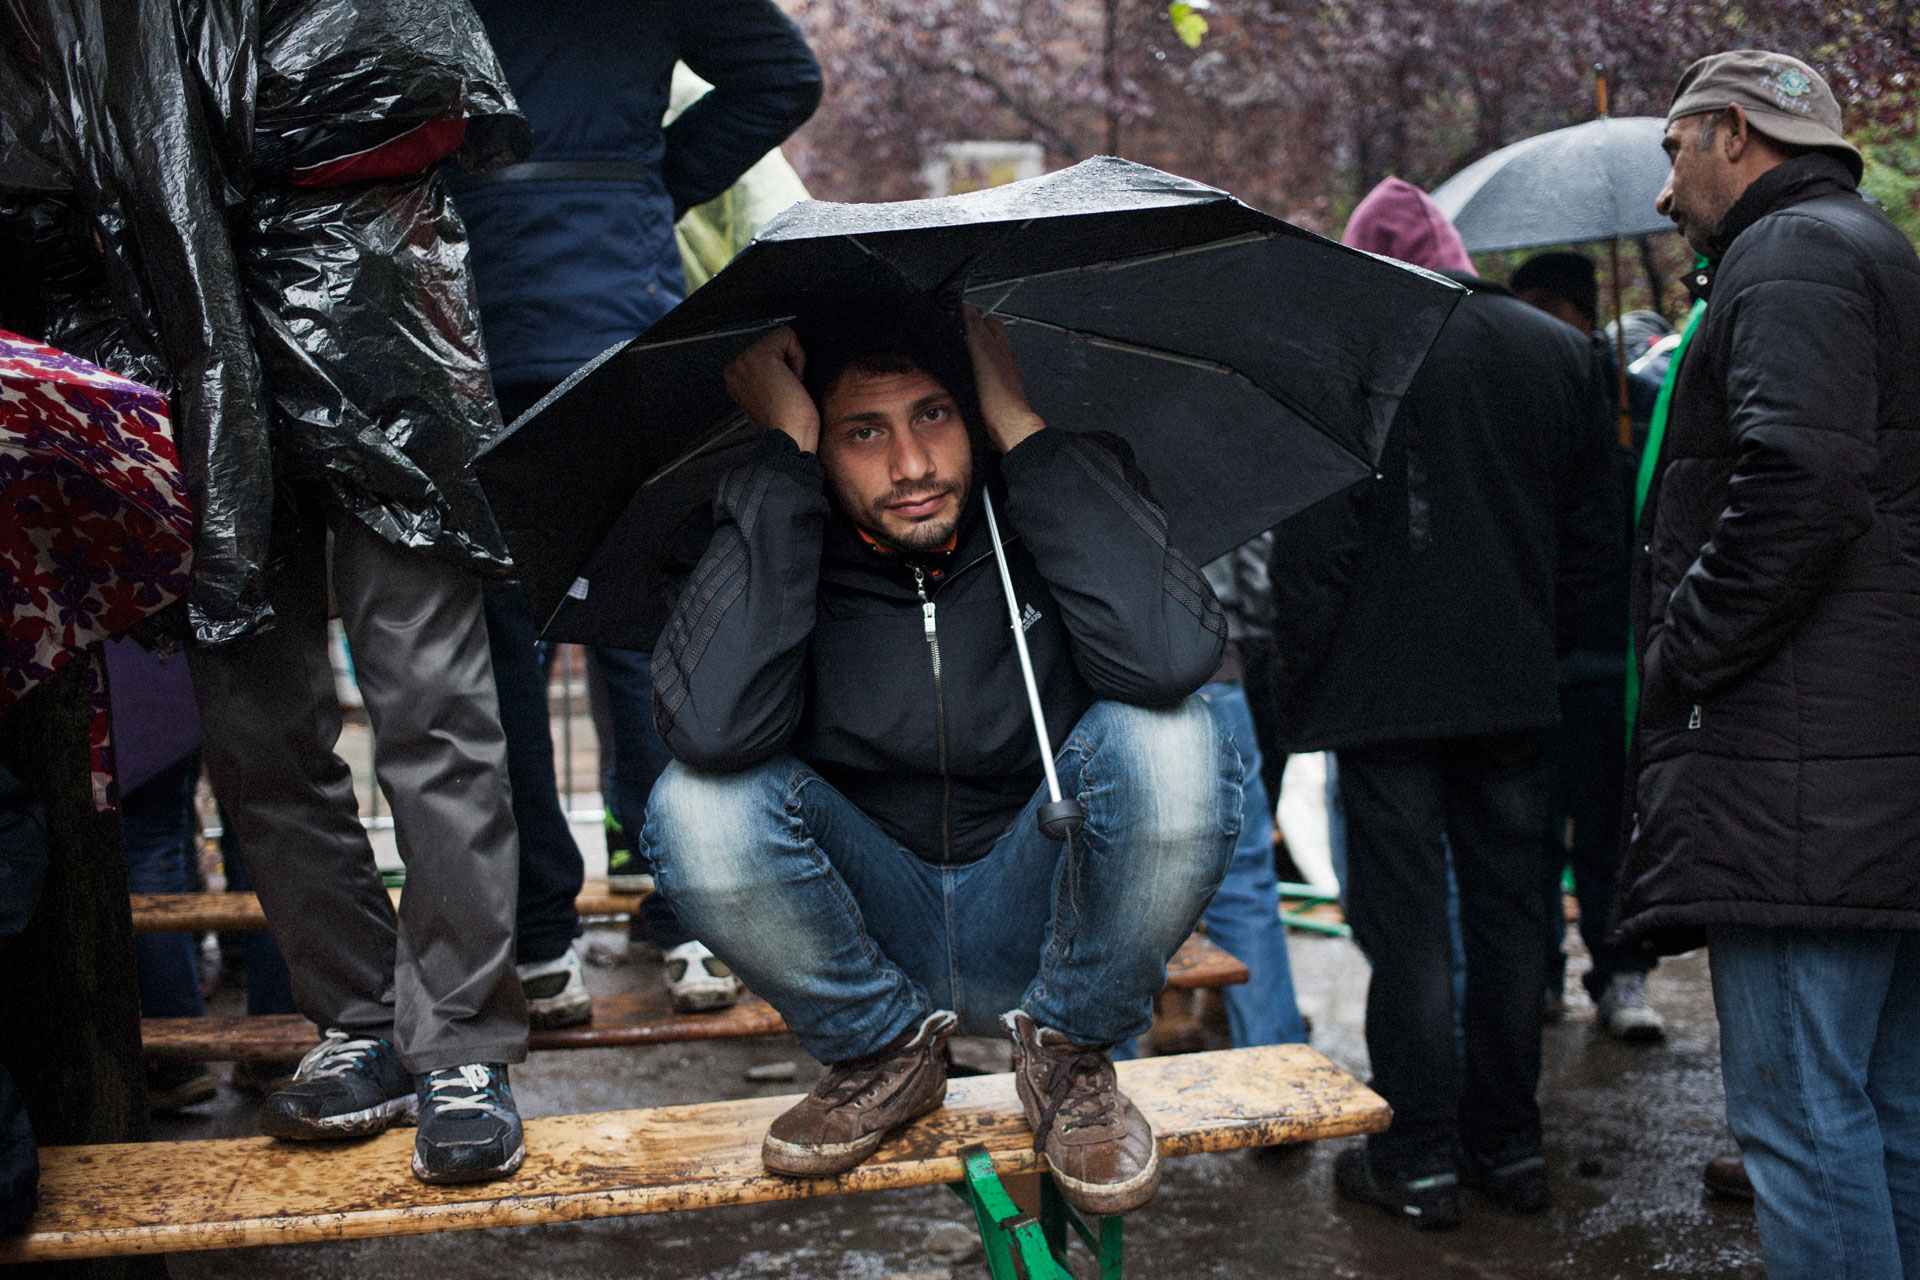 timo-stammberger-photography-fotografie-berlin-lageso-refugees-fluechtlinge-migration